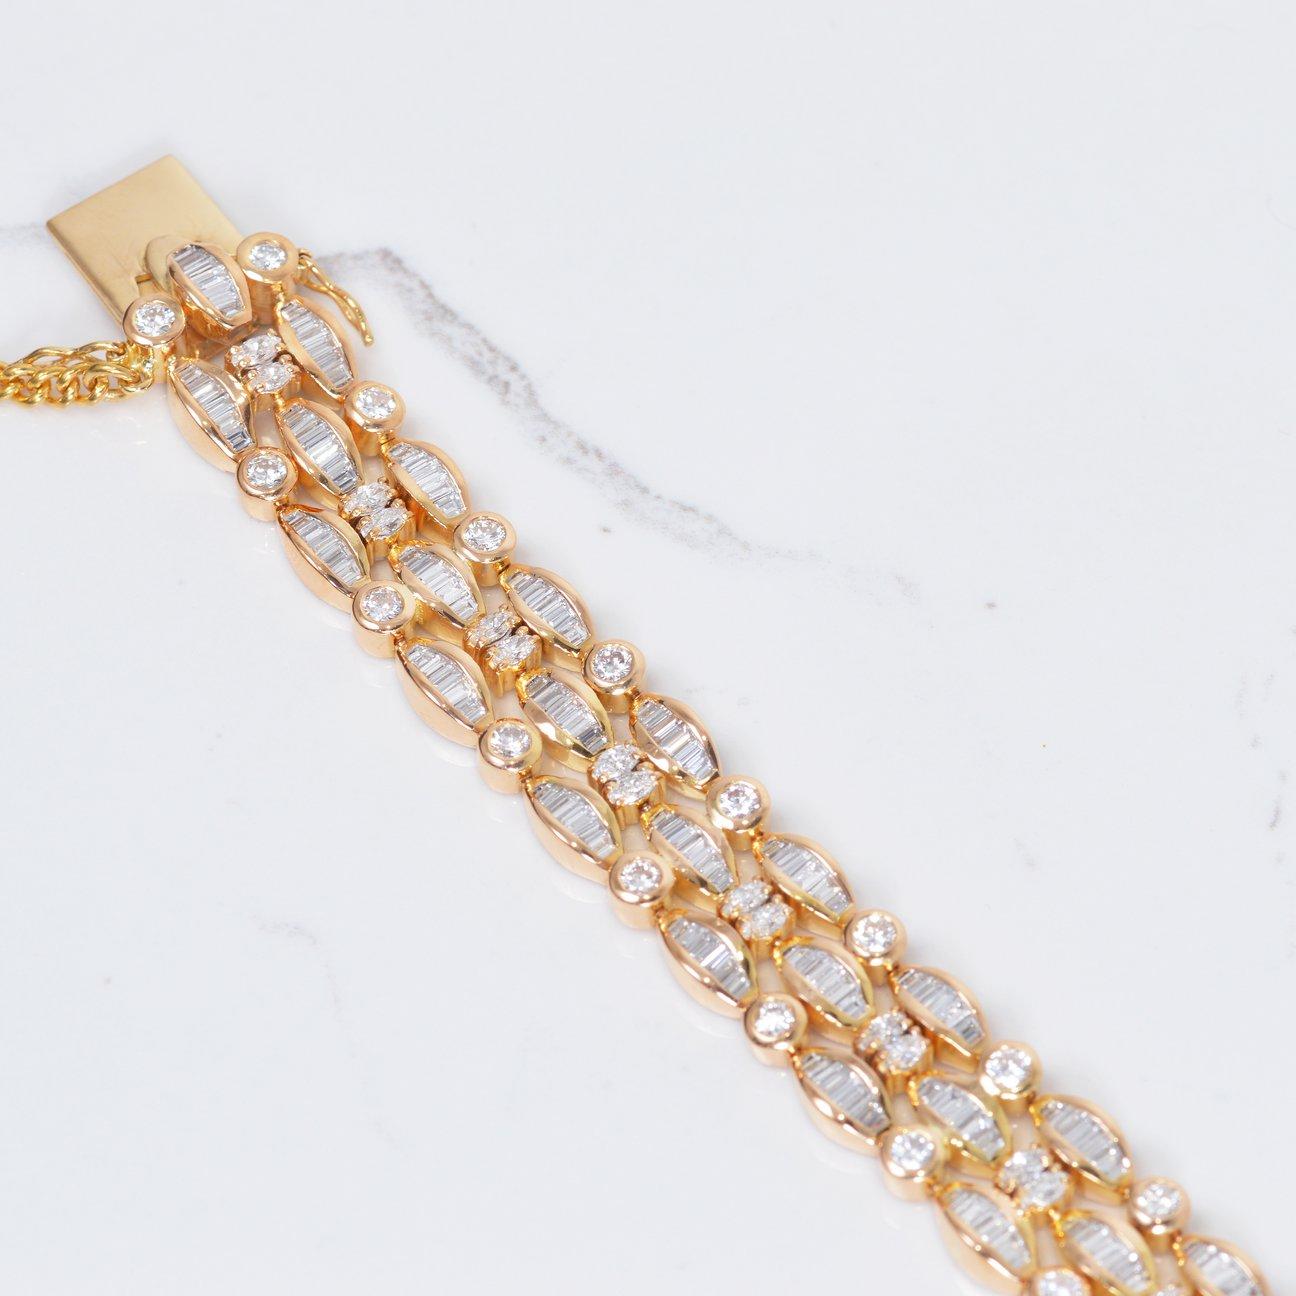 Ce magnifique bracelet en diamants est une pièce vintage récupérée, et nous ne pouvons pas nous en passer ! Ce magnifique bracelet est rempli de 11,25 carats de diamants, tous sertis dans de l'or jaune 22k. Il mesure 7 pouces de long.